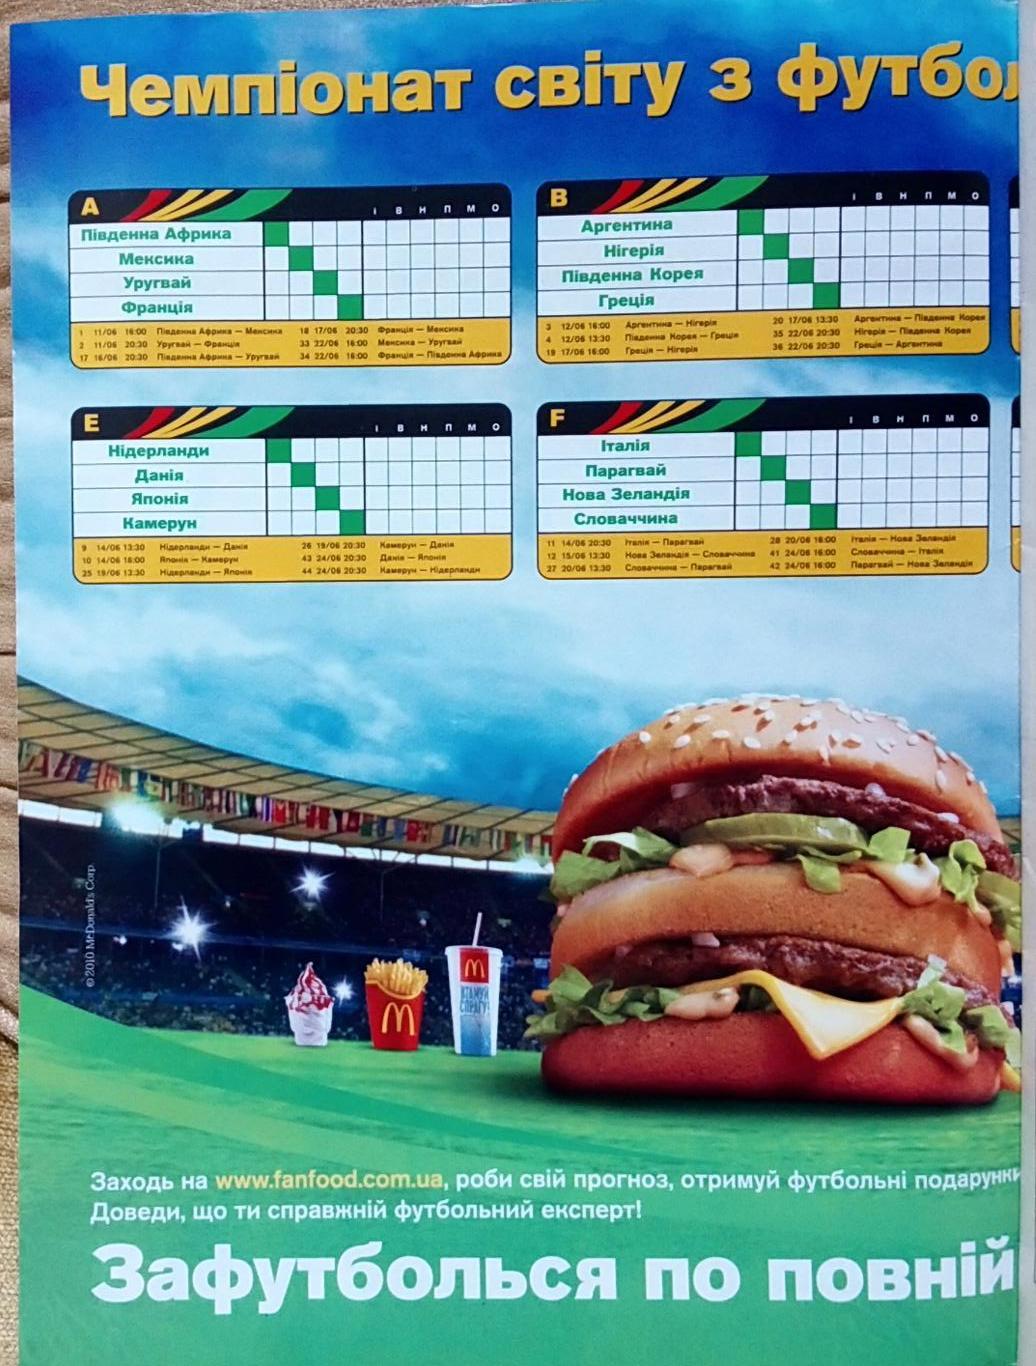 Журнал. Футбол. N 43/2010. Постер календар ч.с. 1